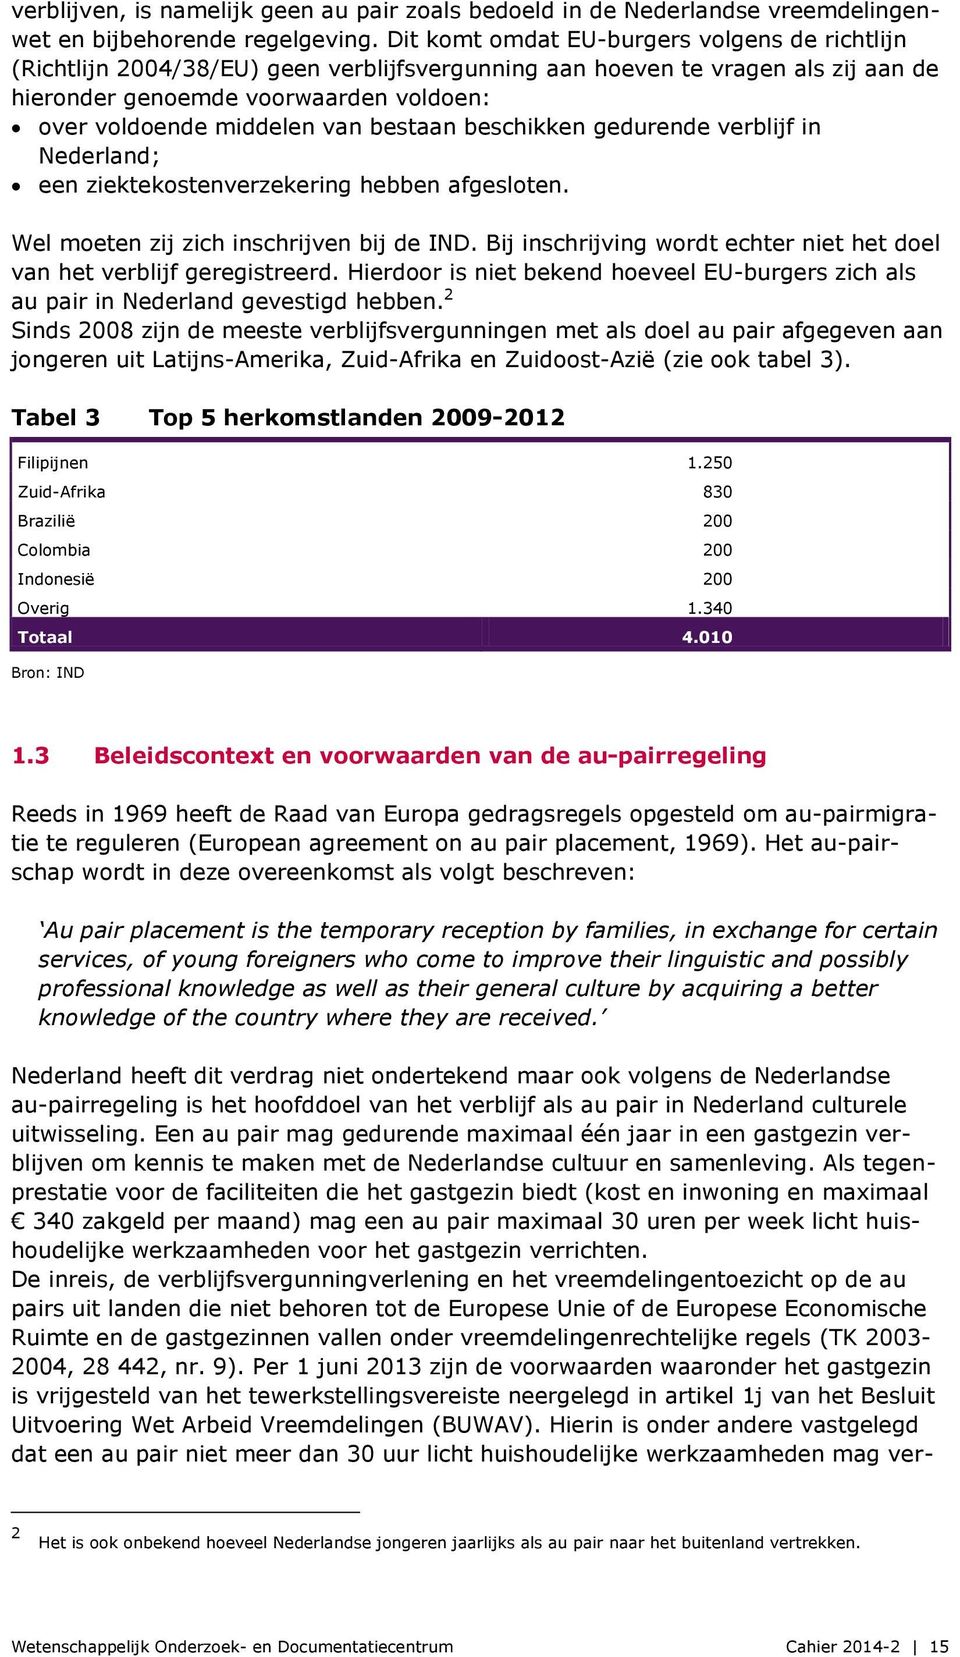 bestaan beschikken gedurende verblijf in Nederland; een ziektekostenverzekering hebben afgesloten. Wel moeten zij zich inschrijven bij de IND.